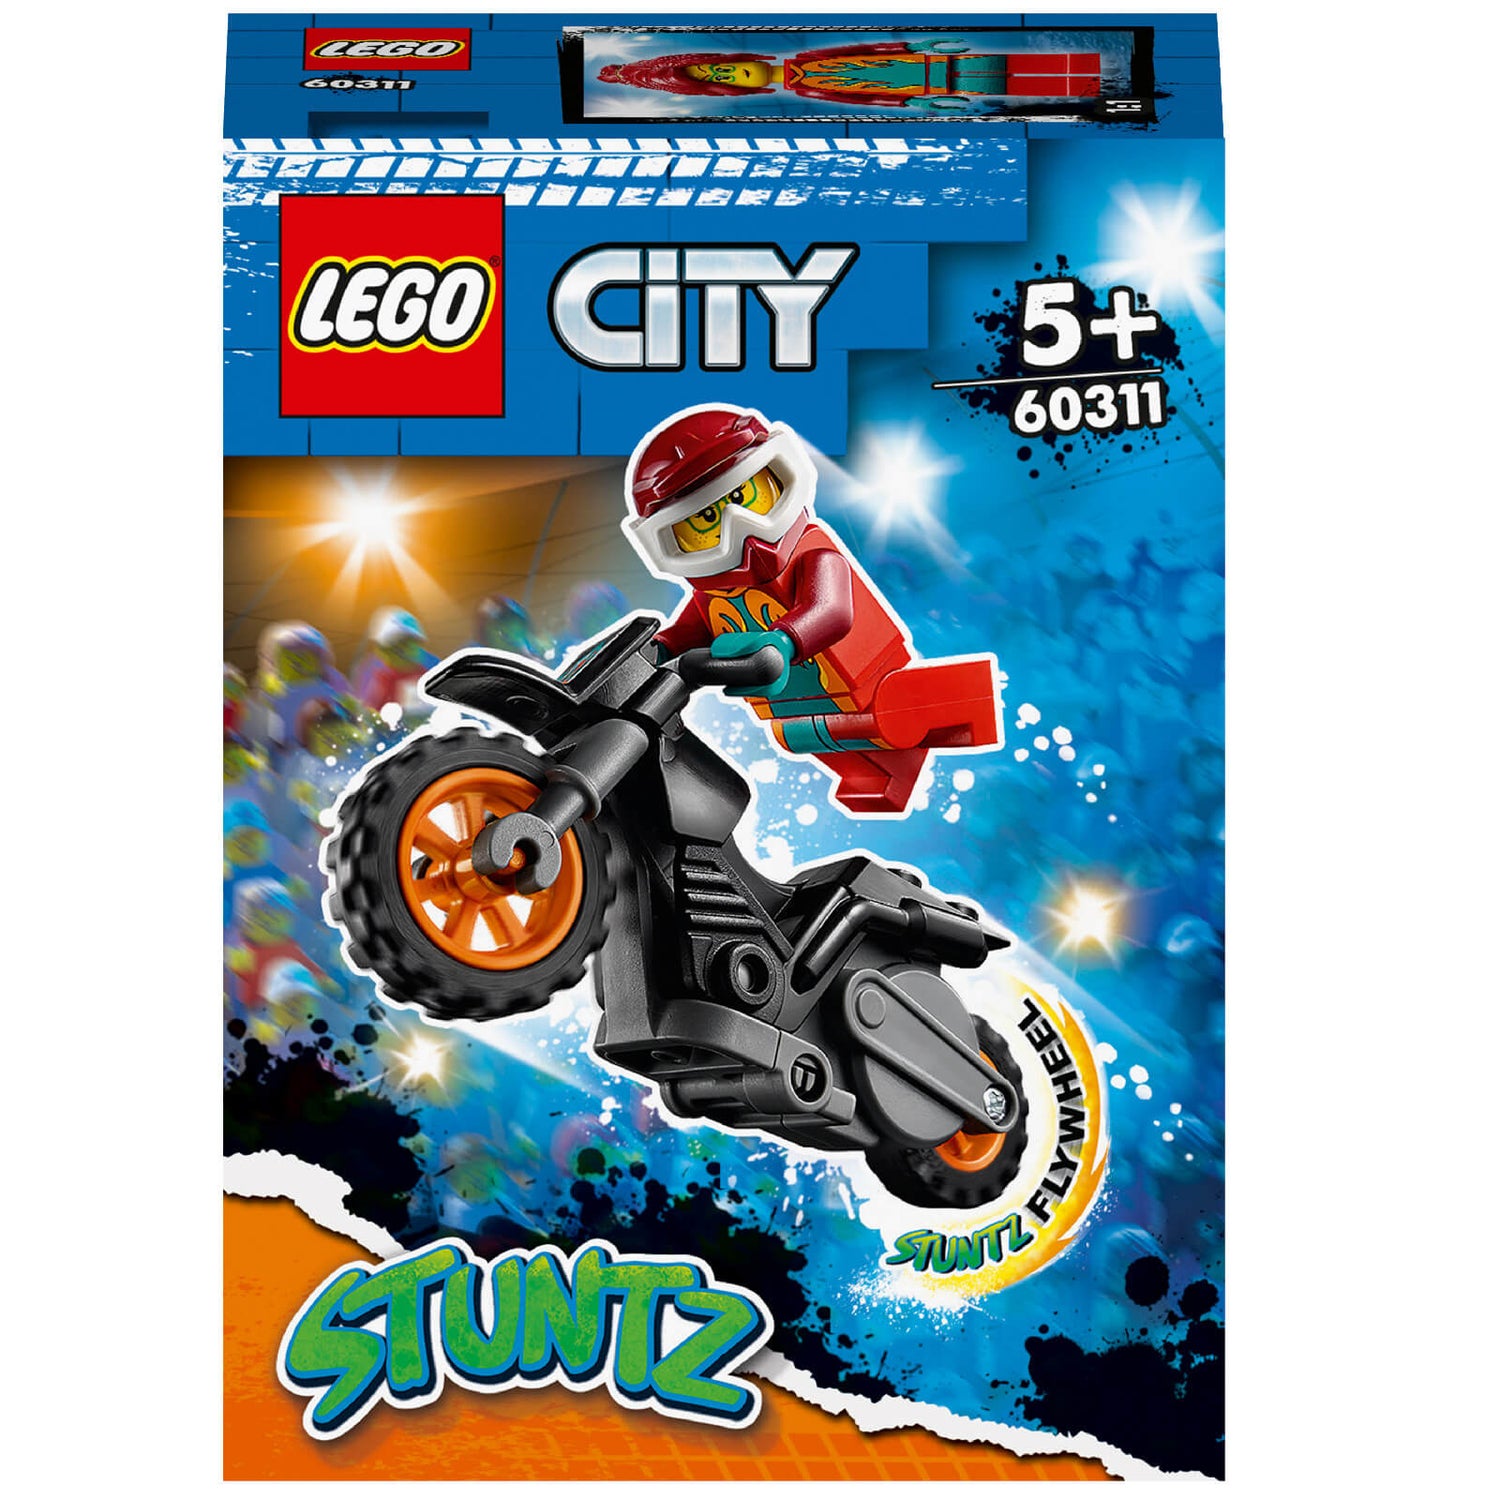 LEGO City: Stuntz Fire Stunt Bike Show Toy Motorbike (60311)